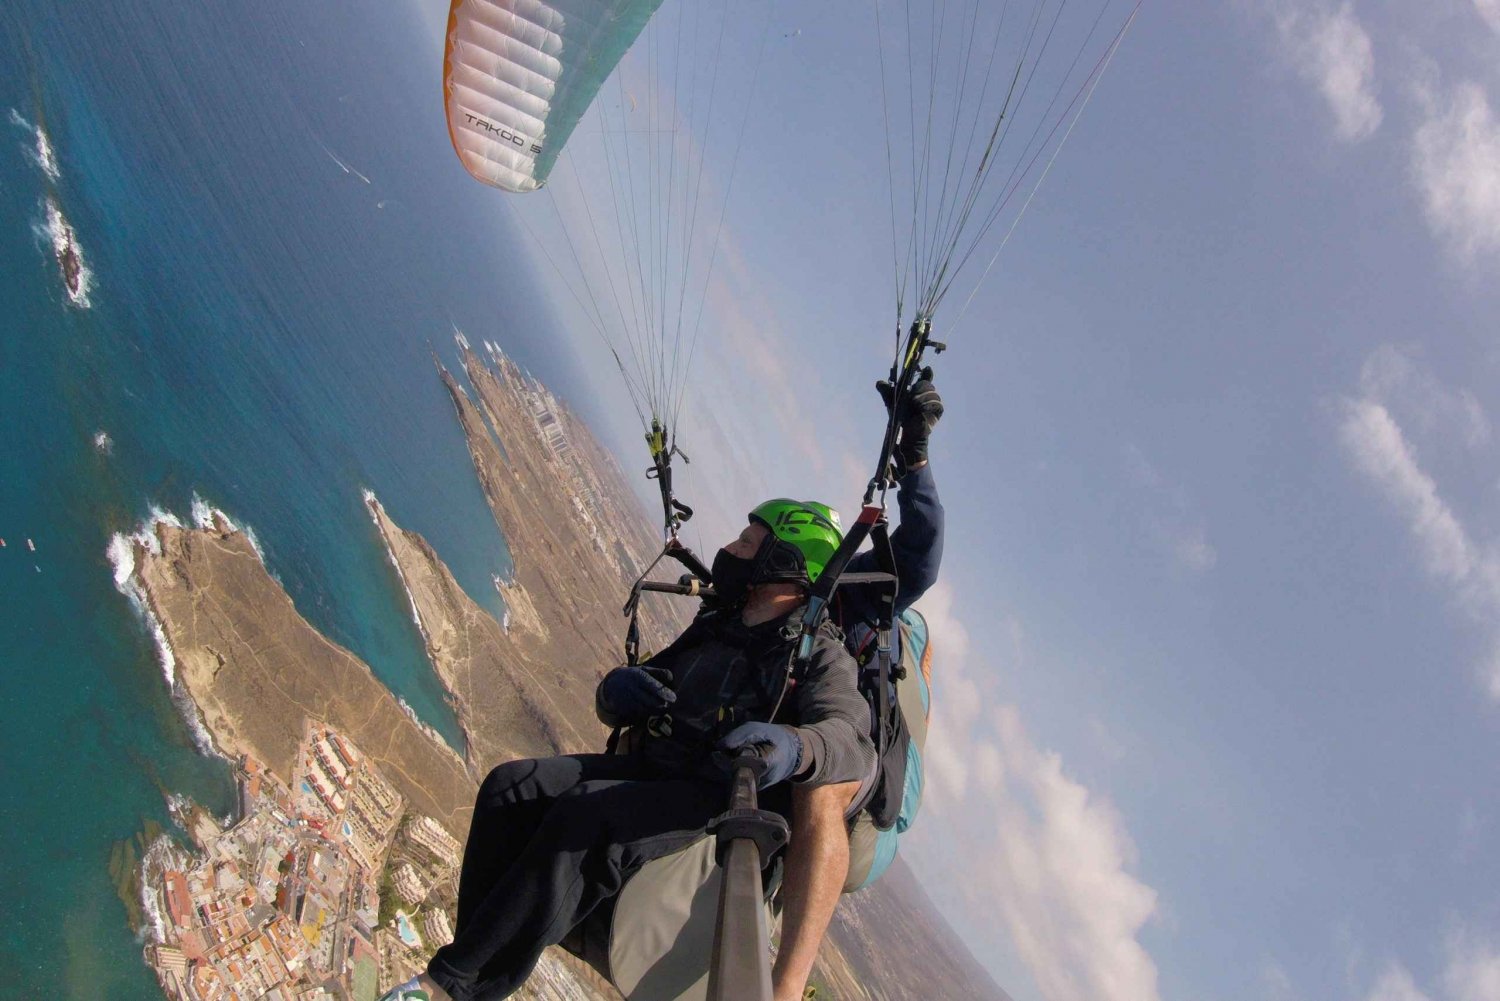 Santa Cruz de Tenerife: Voo de parapente acrobático